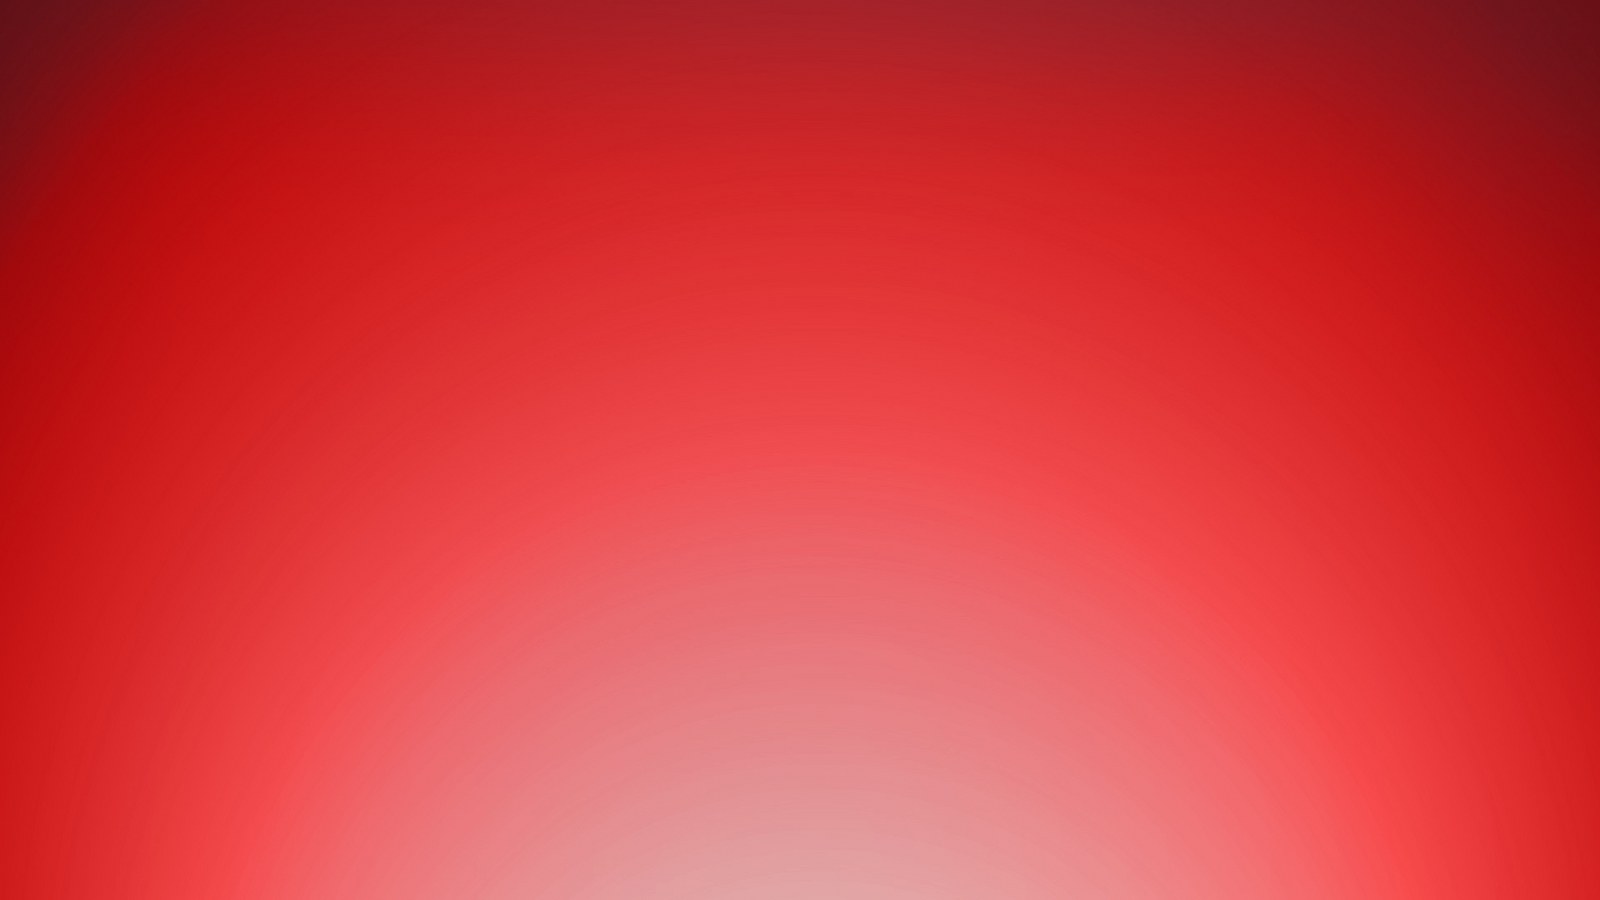 Free Red Wallpaper - WallpaperSafari